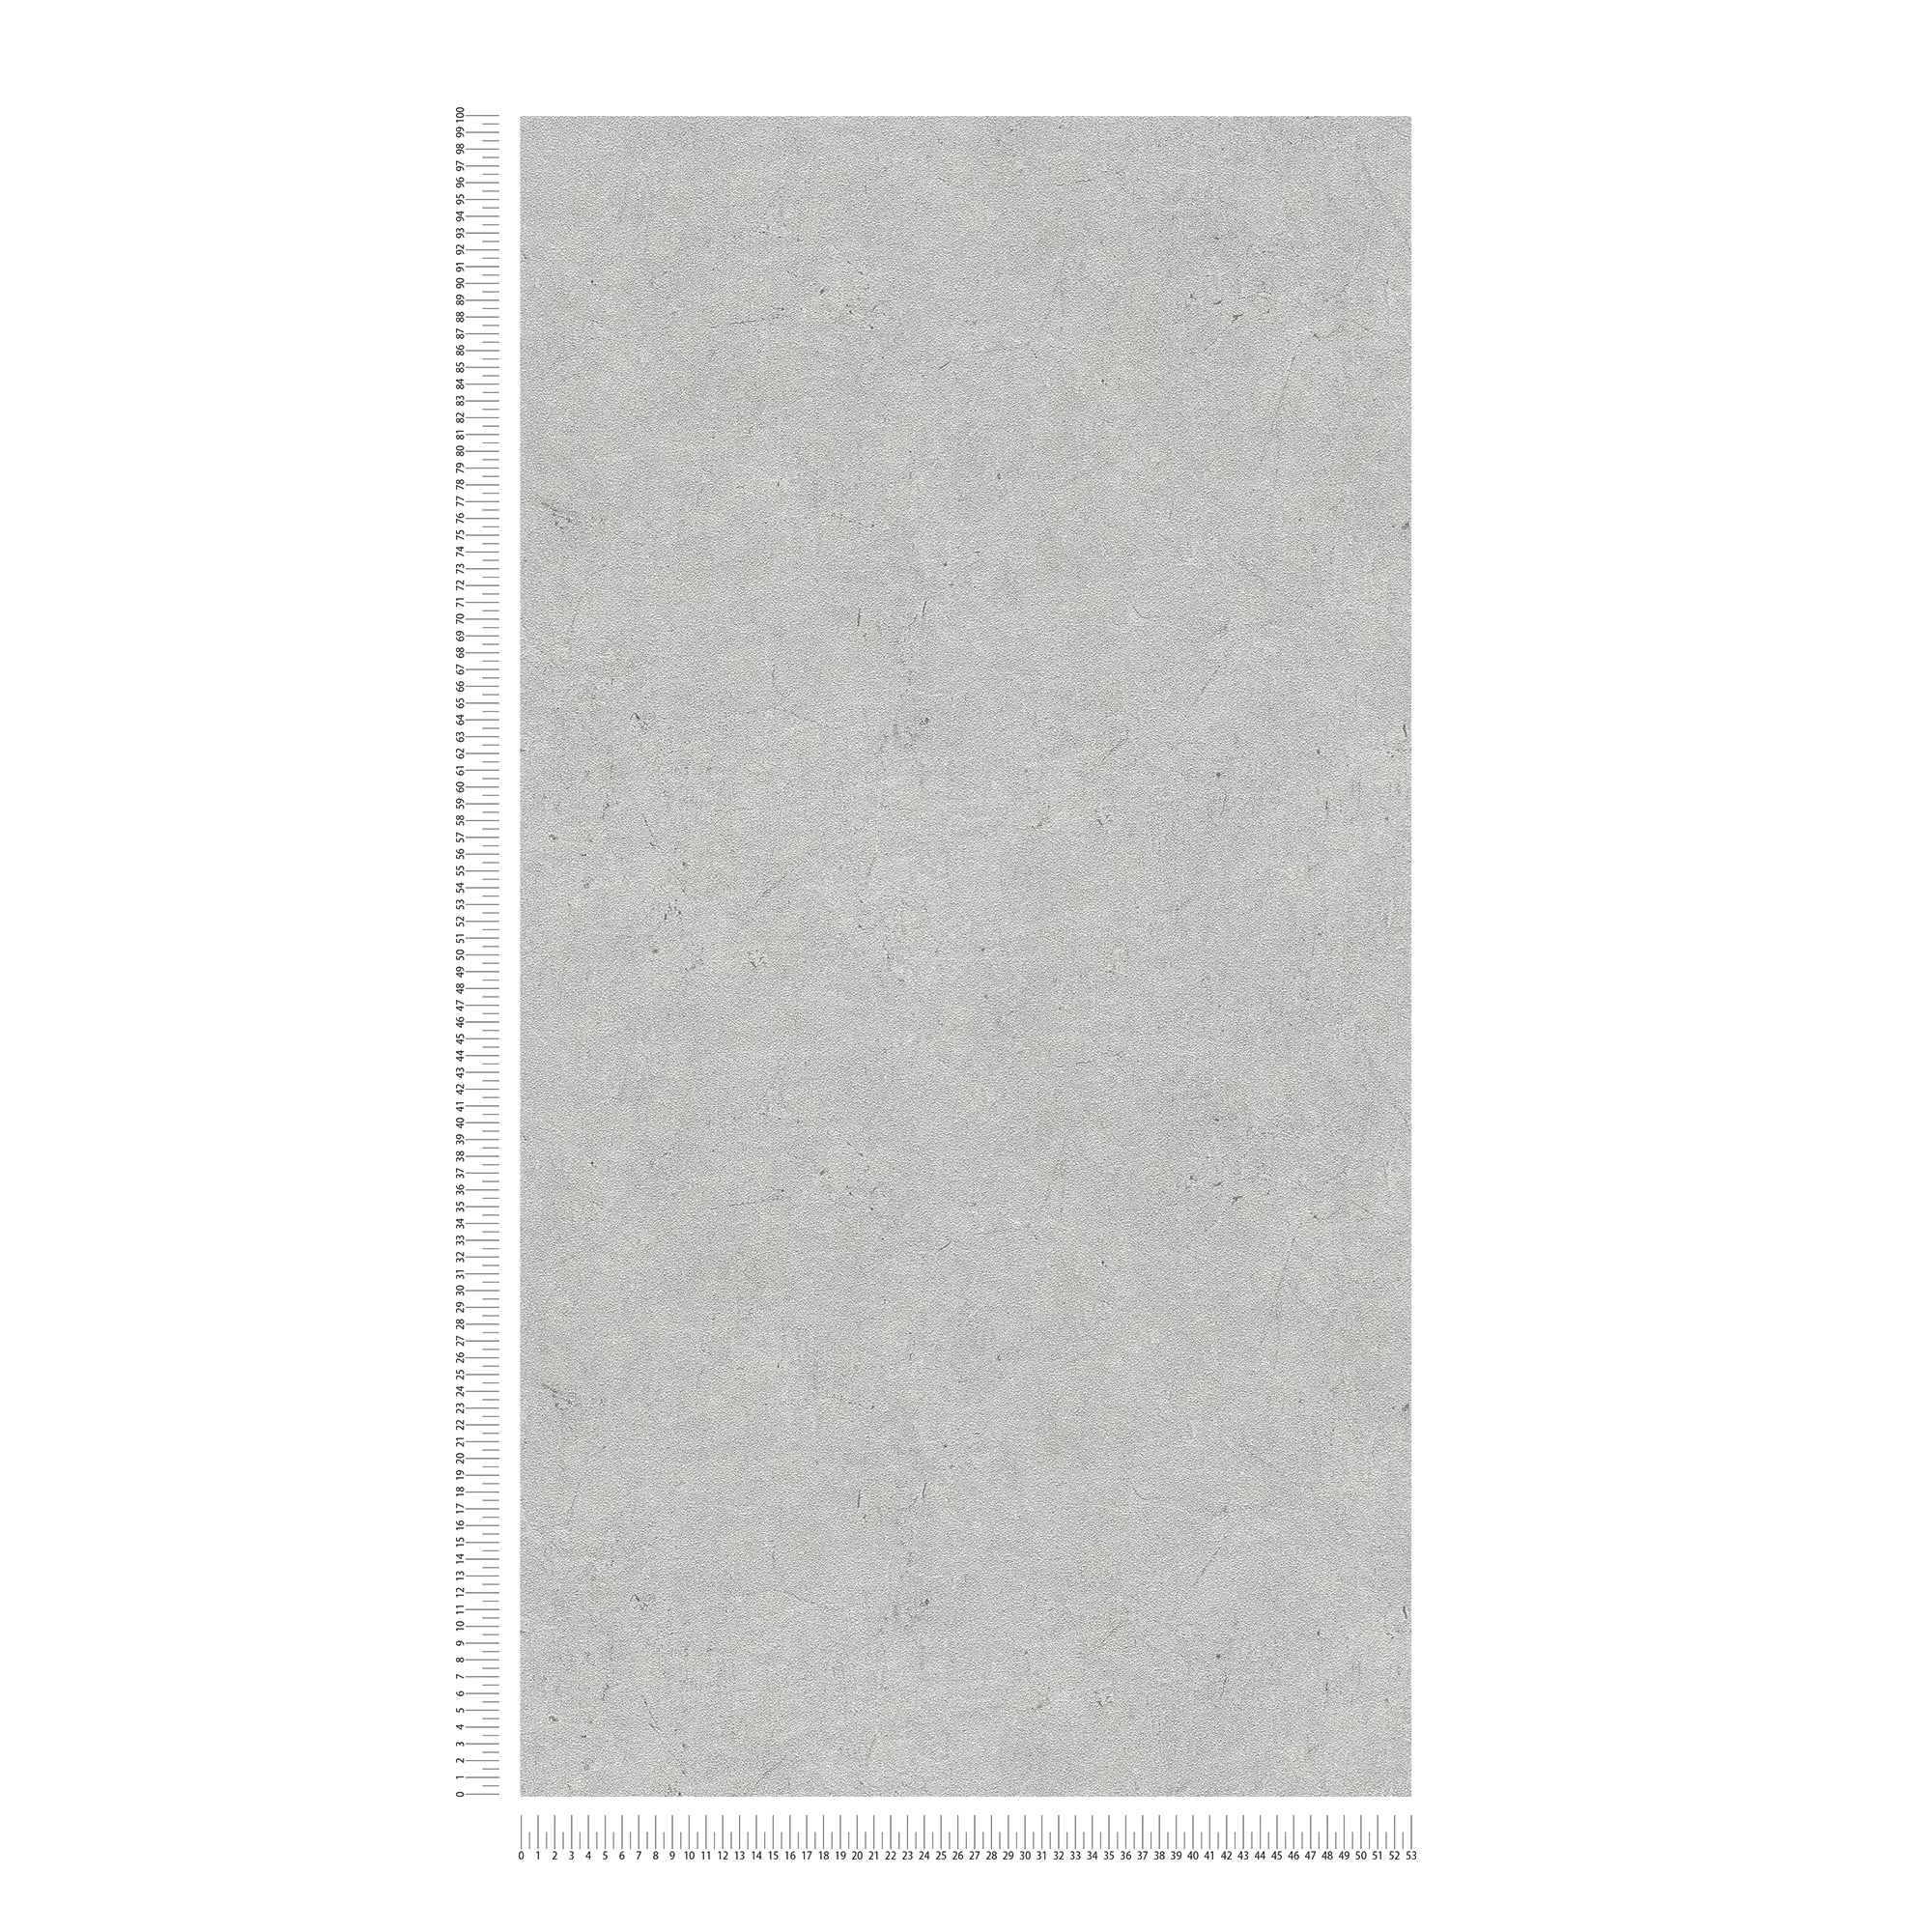             Papel pintado con aspecto de yeso, detallado y rústico - gris
        